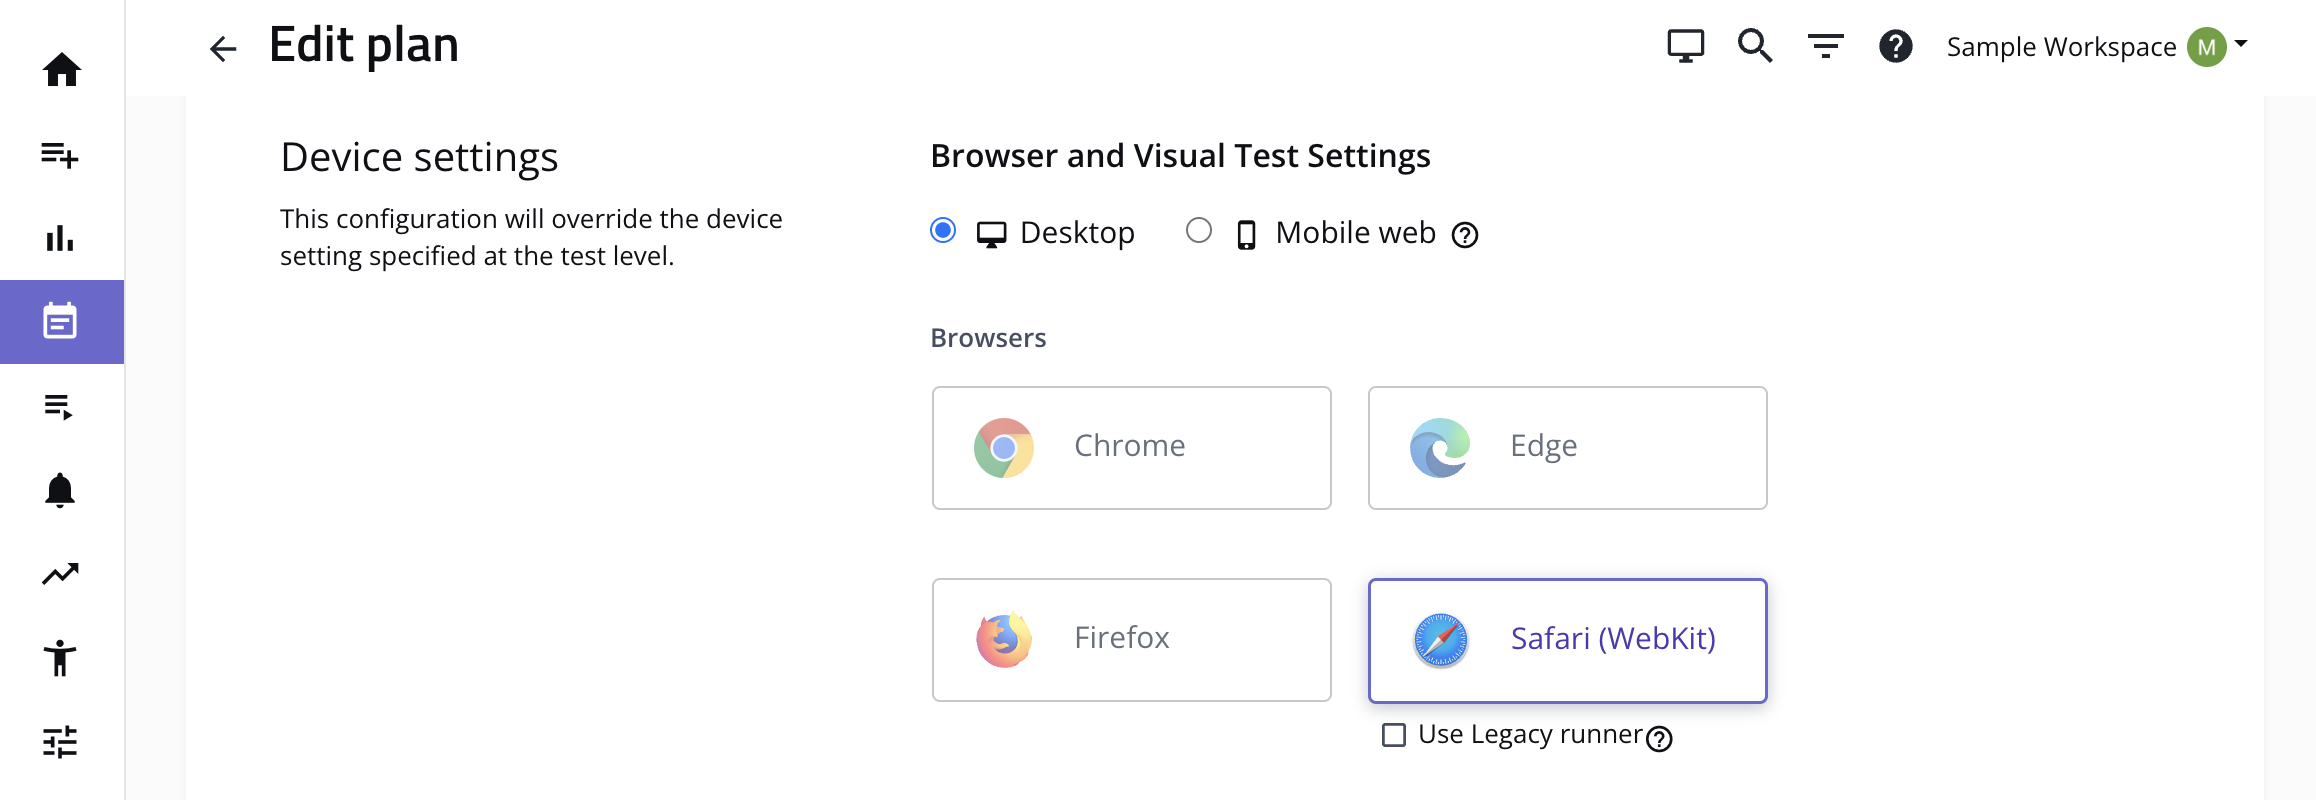 Browser selection menu with Safari (WebKit)